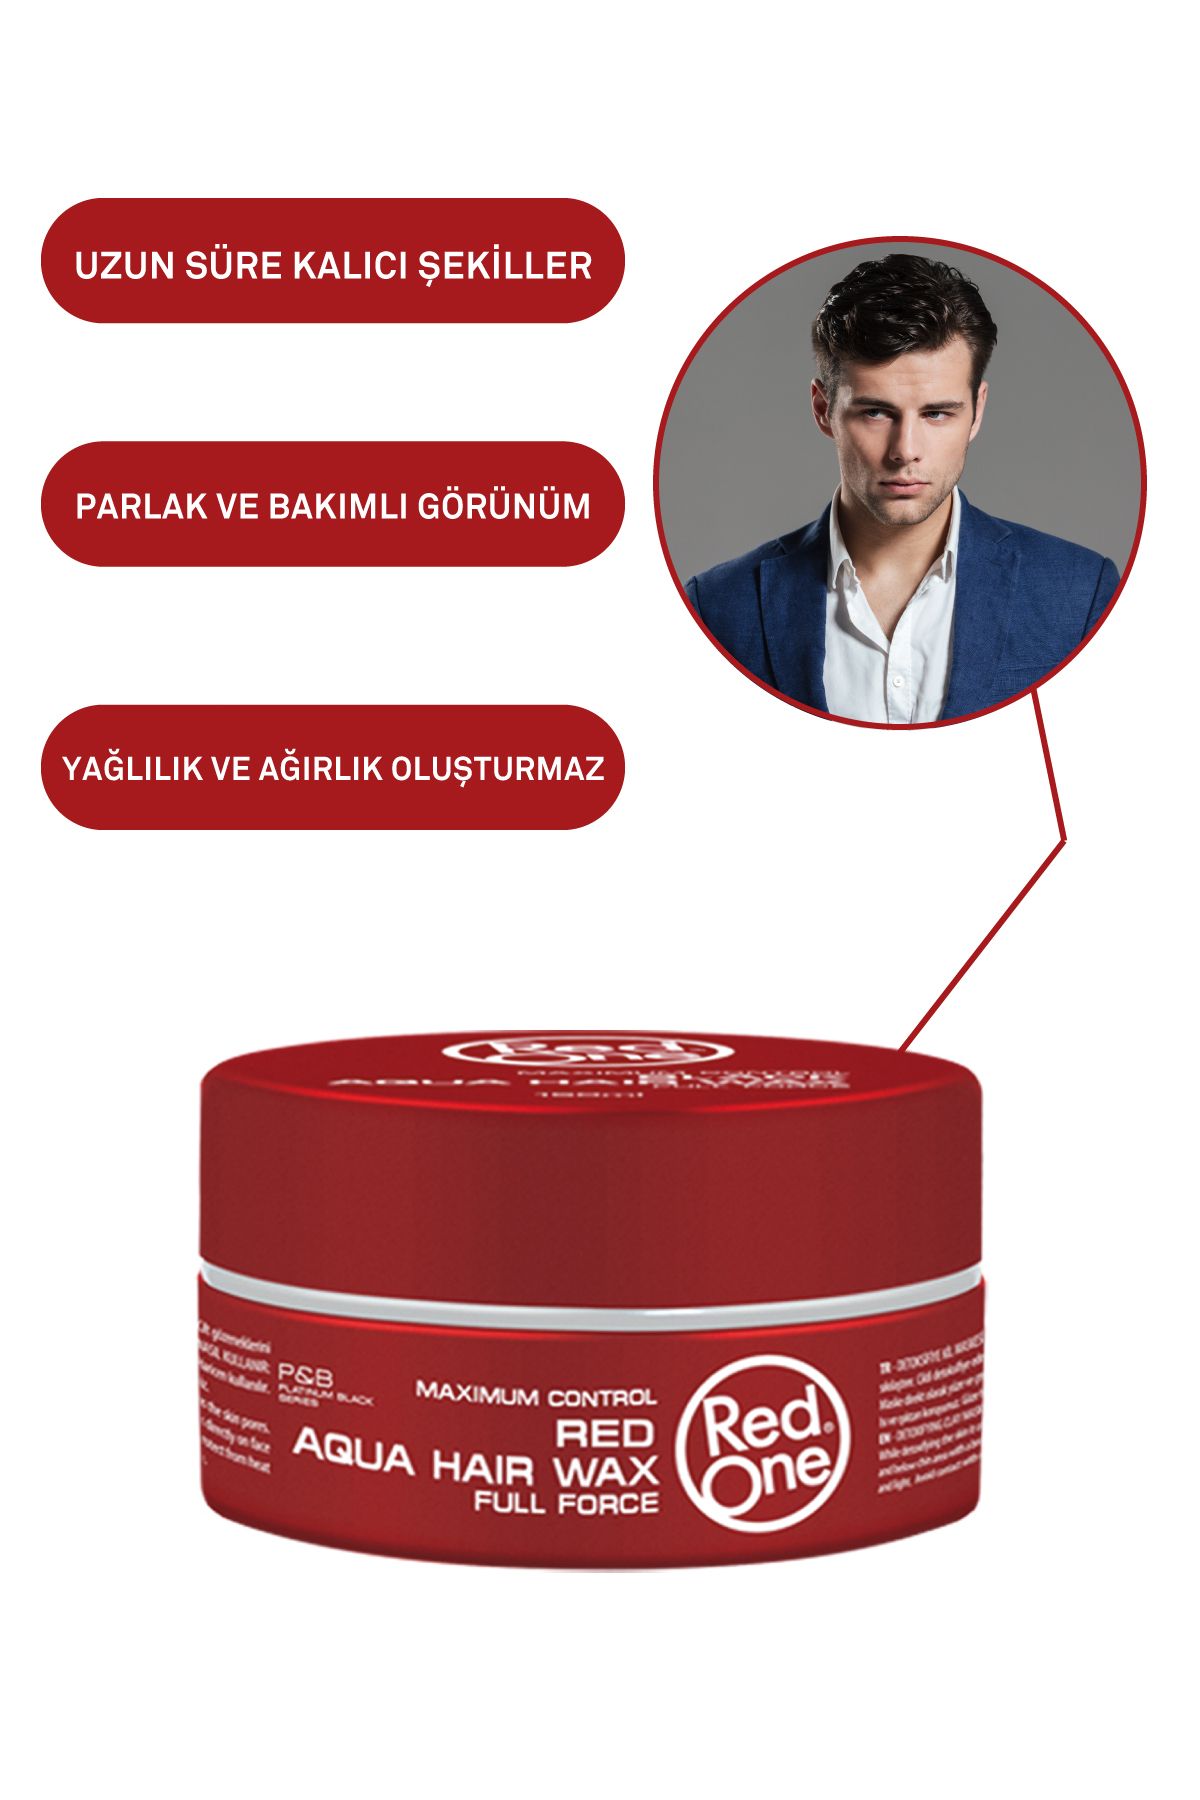 Red One Redone Krem Kolonya Sport 400 ml 8697926007606 Fiyatı, Yorumları -  Trendyol